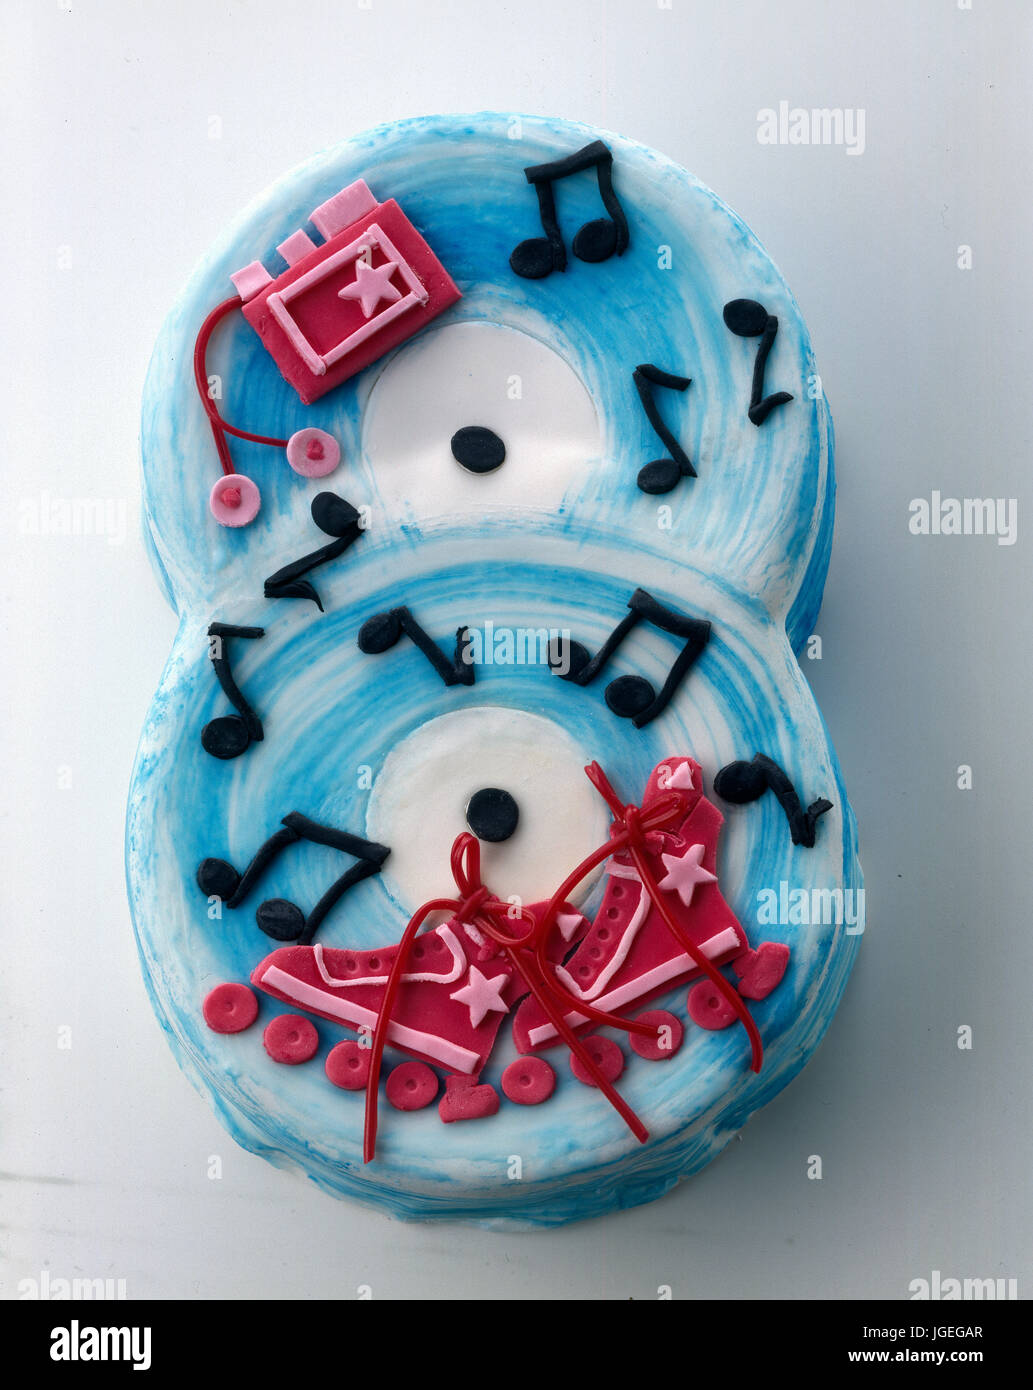 Novità per bambini torta di compleanno: decorate 8 torta di compleanno per bambini Foto Stock